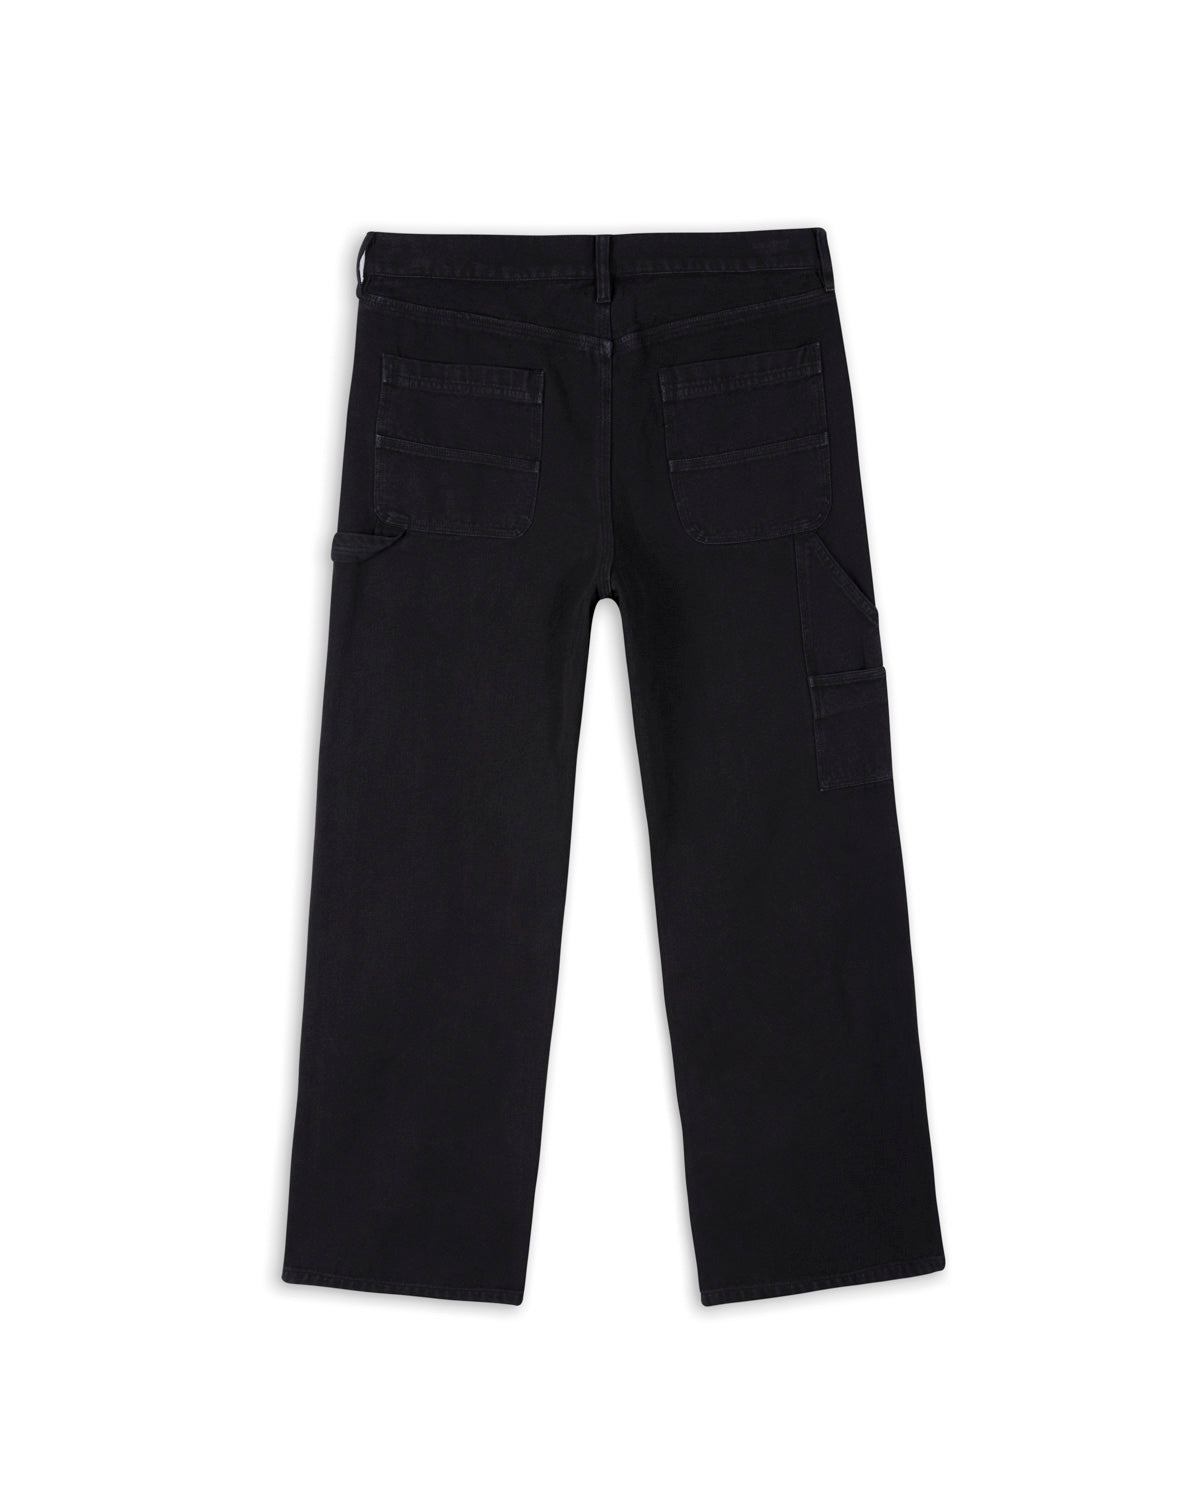 DuraDrive Men's Black Fleece Lined Double Knee Utility Work Pants